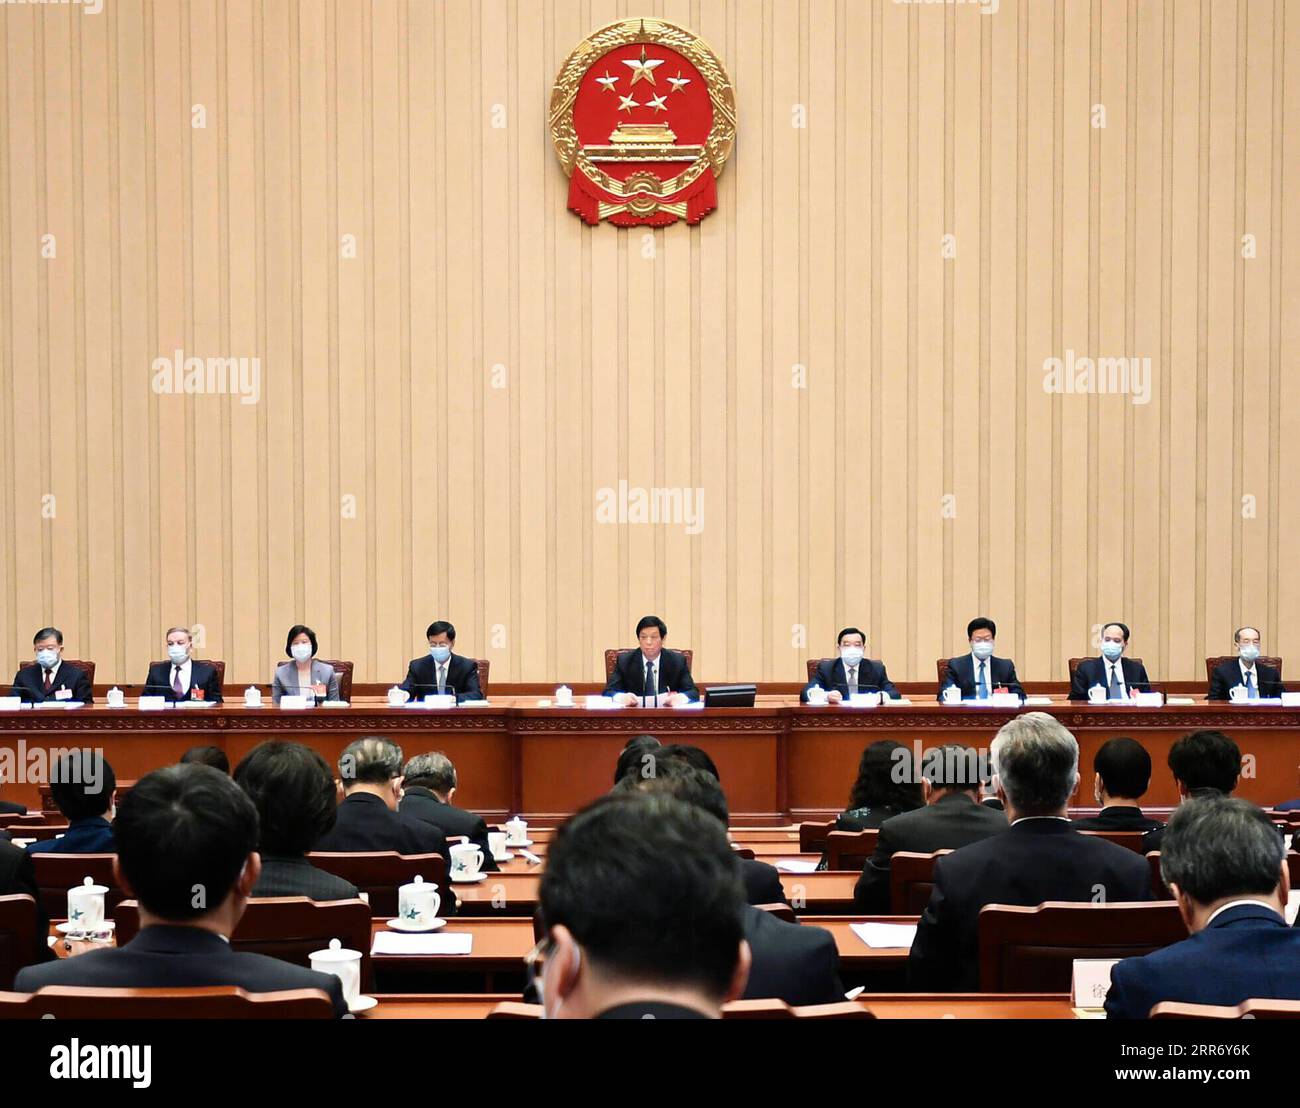 210304 -- PEKING, 4. März 2021 -- Li Zhanshu, Vorsitzender des Ständigen Ausschusses des Nationalen Volkskongresses des NPC, leitet die erste Sitzung des Präsidiums für die vierte Sitzung des 13. NPC in der Großen Halle des Volkes in Peking, der Hauptstadt Chinas, am 4. März 2021. ZWEI SESSIONSCHINA-BEIJING-NPC-PRESIDIUM-MEETING CN XIEXHUANCHI PUBLICATIONXNOTXINXCHN Stockfoto